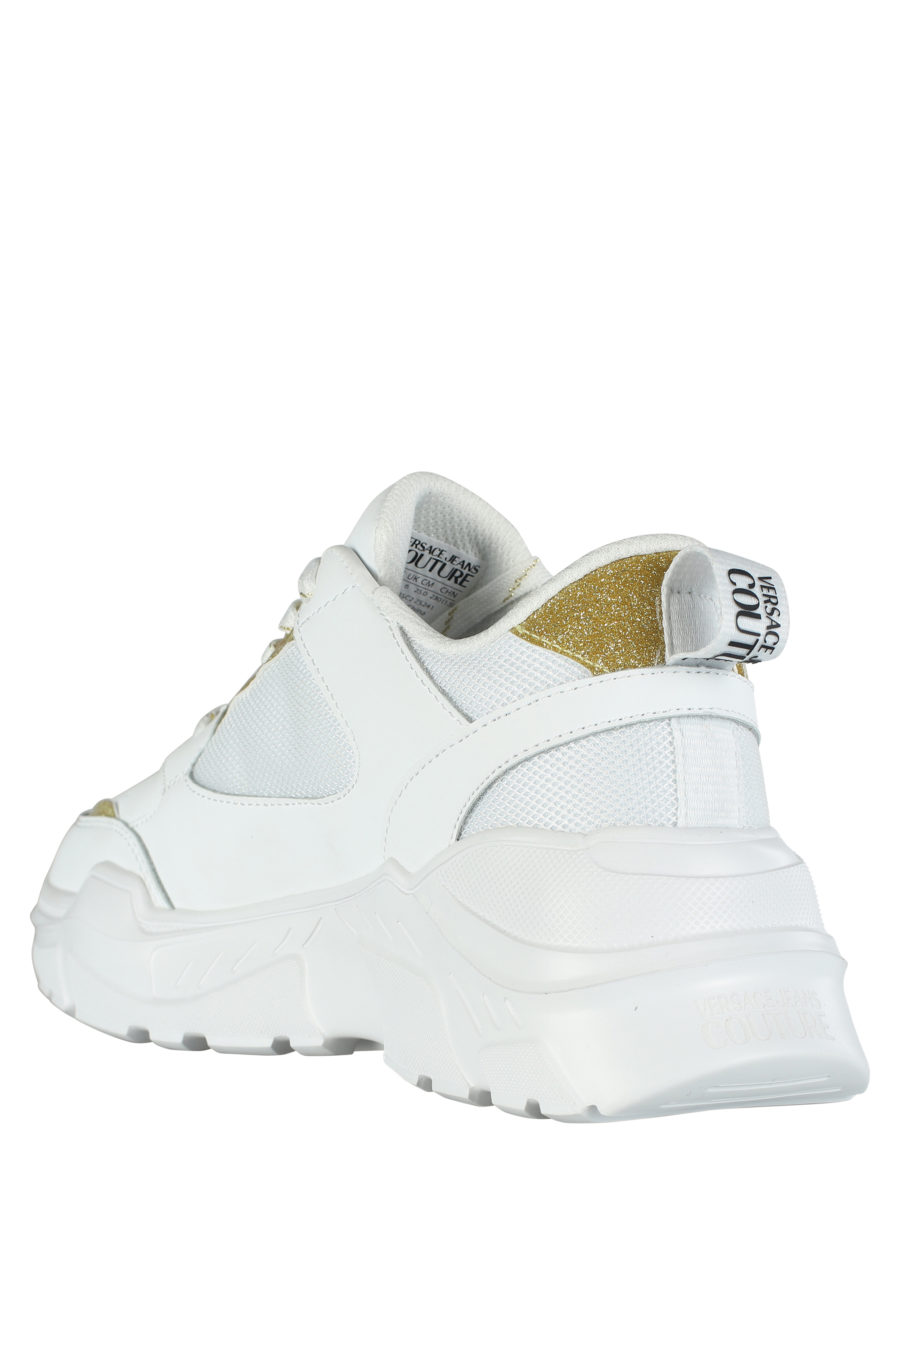 Zapatillas blancas con detalles dorado "glitter" - IMG 5283